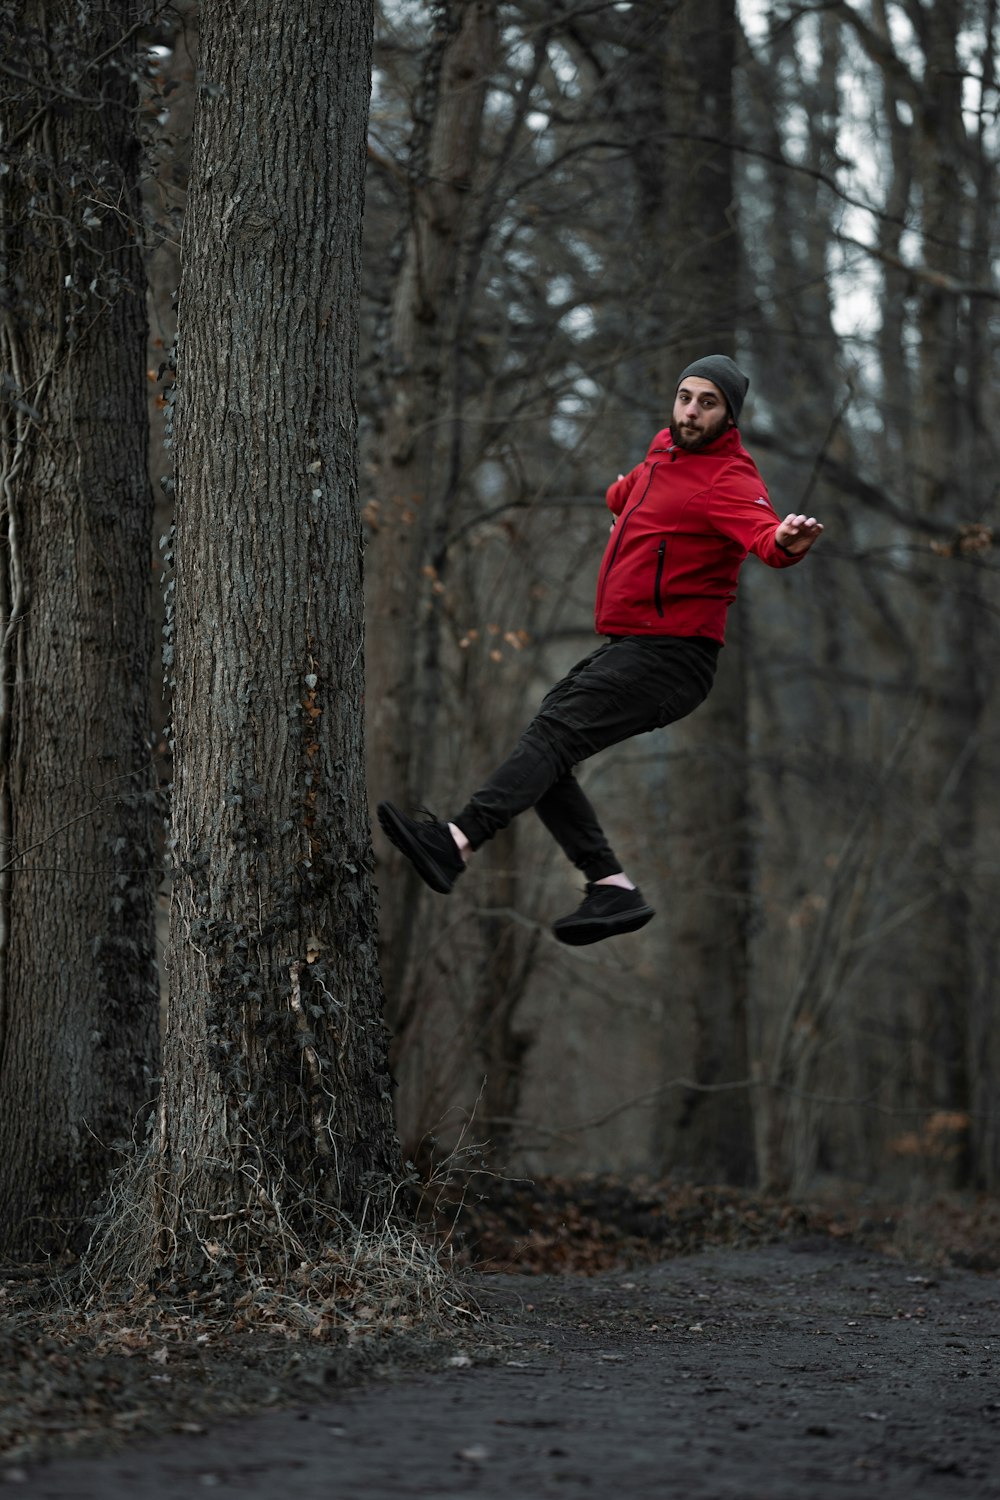 Mann in rotem Kapuzenpulli und schwarzer Hose springt tagsüber auf Baumstamm